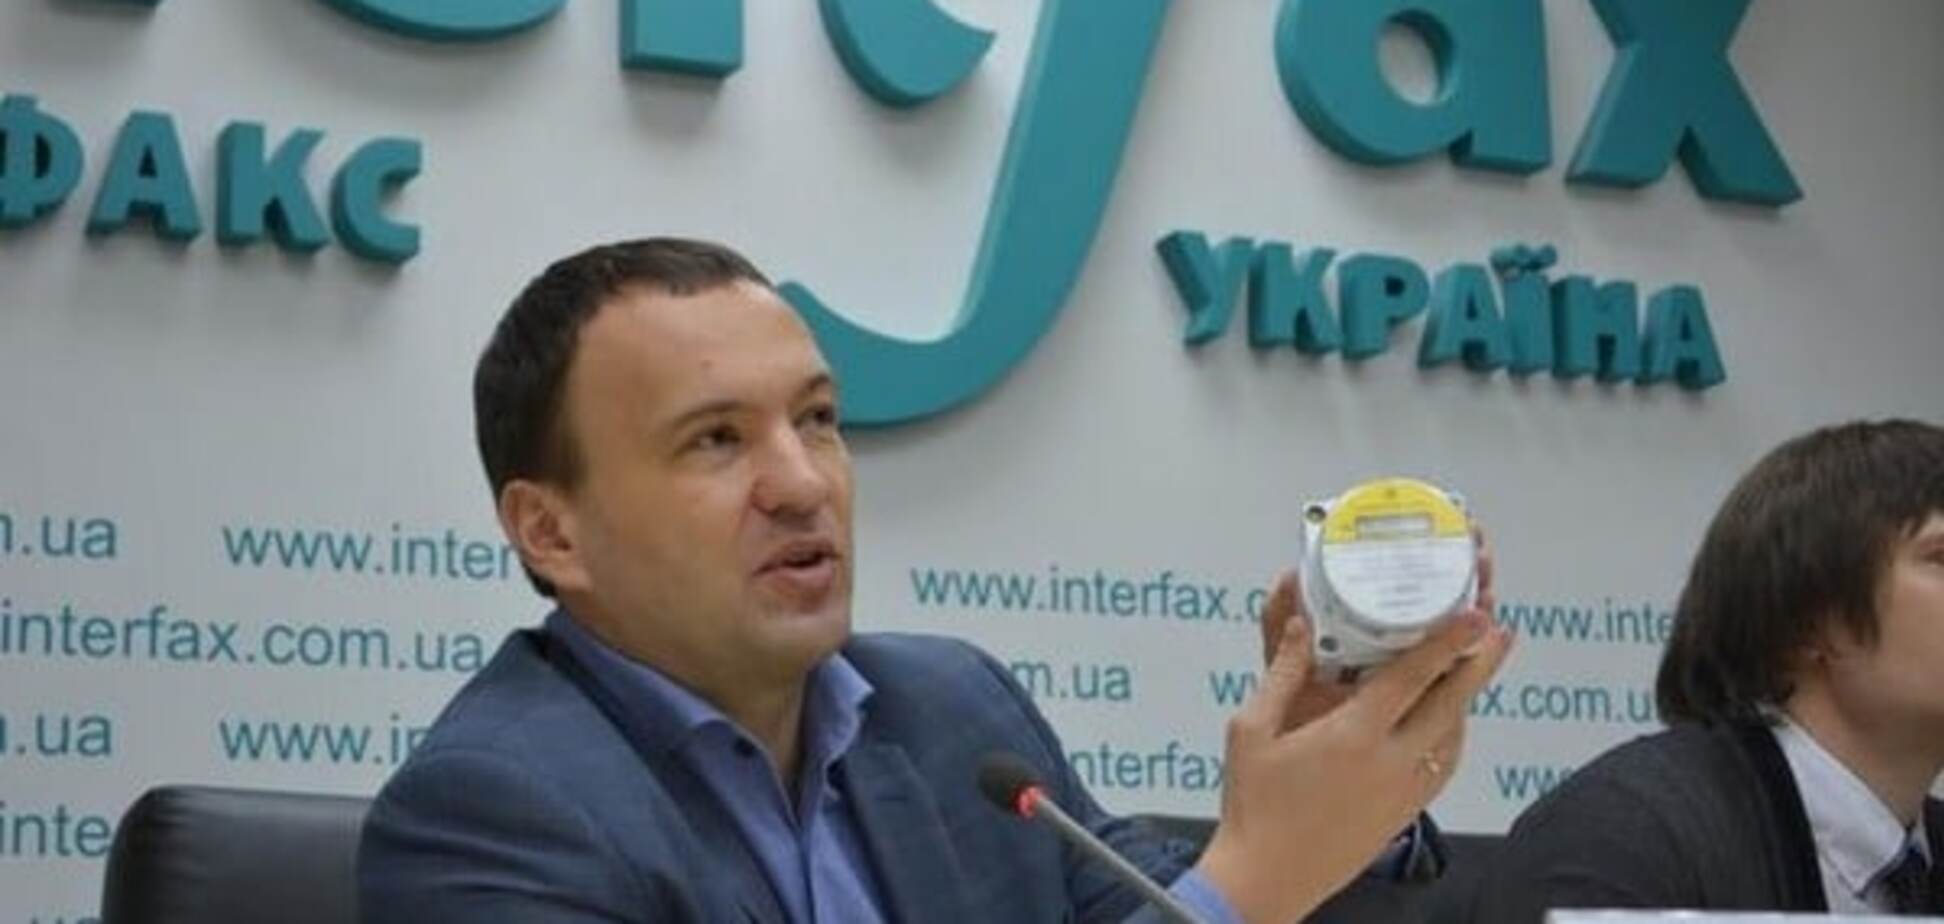 'Киевгаз' обязался установить счетчики потребителям за свой счет